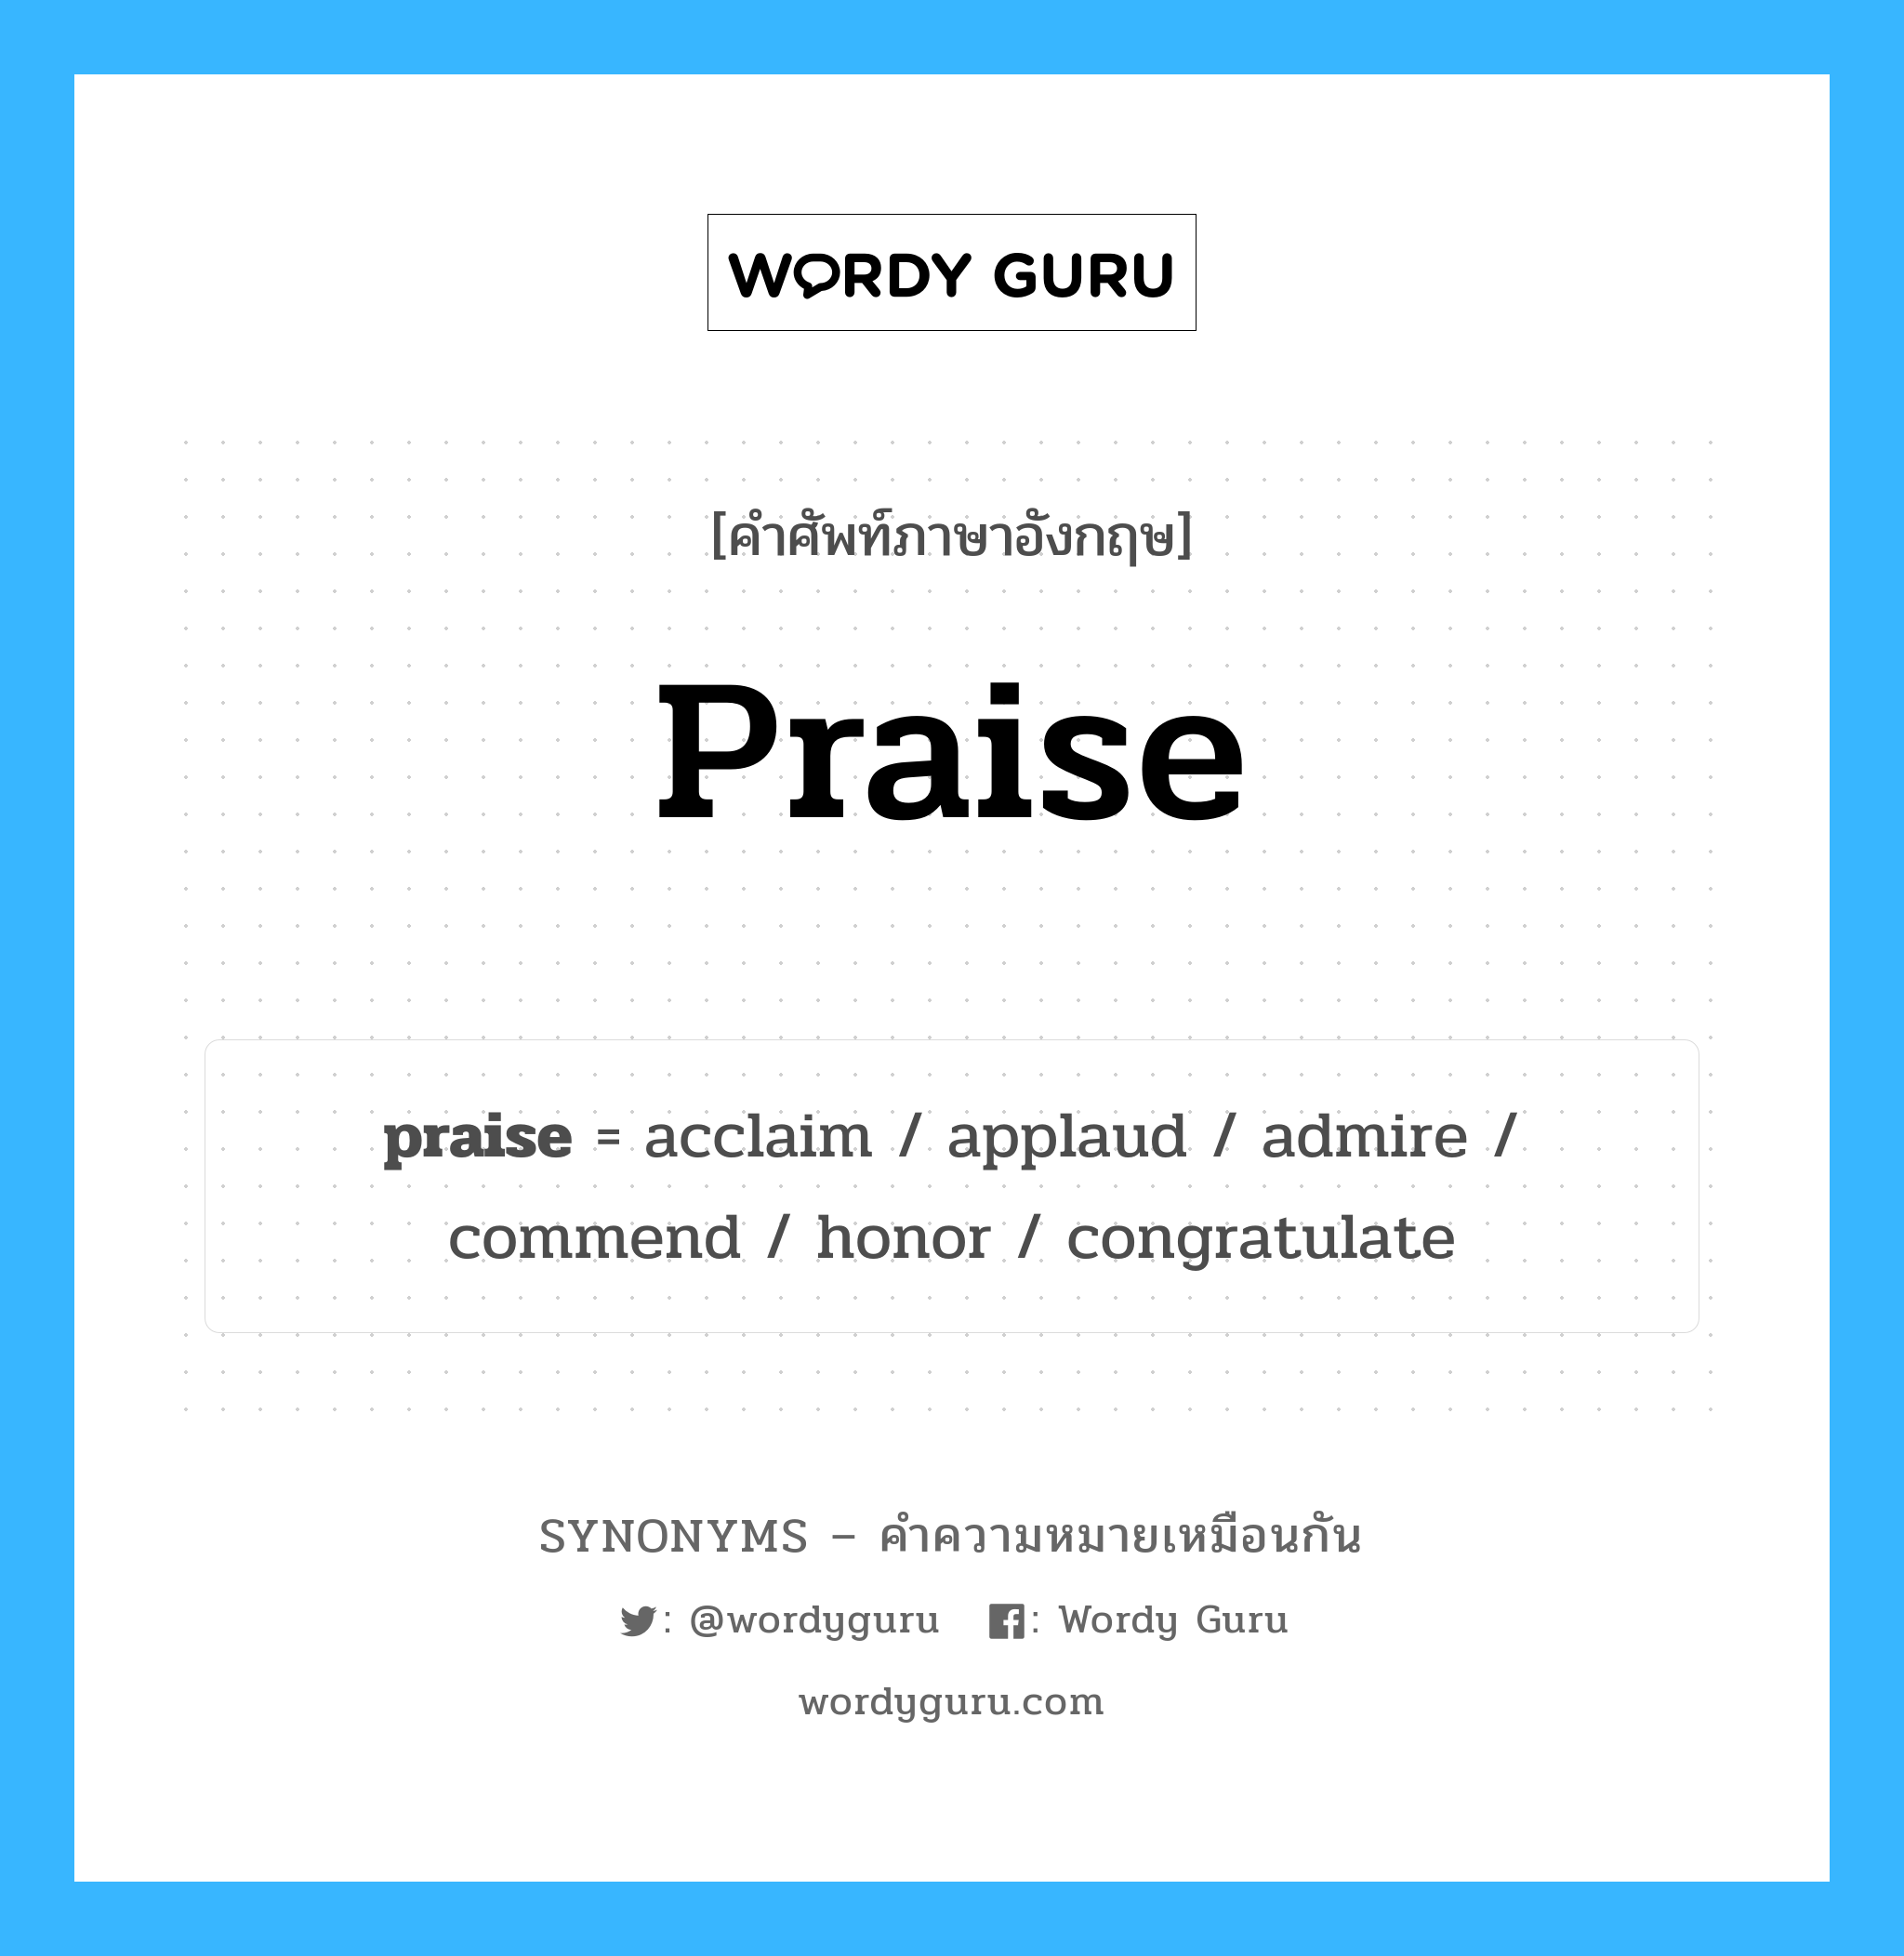 honor เป็นหนึ่งใน praise และมีคำอื่น ๆ อีกดังนี้, คำศัพท์ภาษาอังกฤษ honor ความหมายคล้ายกันกับ praise แปลว่า เกียรติ หมวด praise